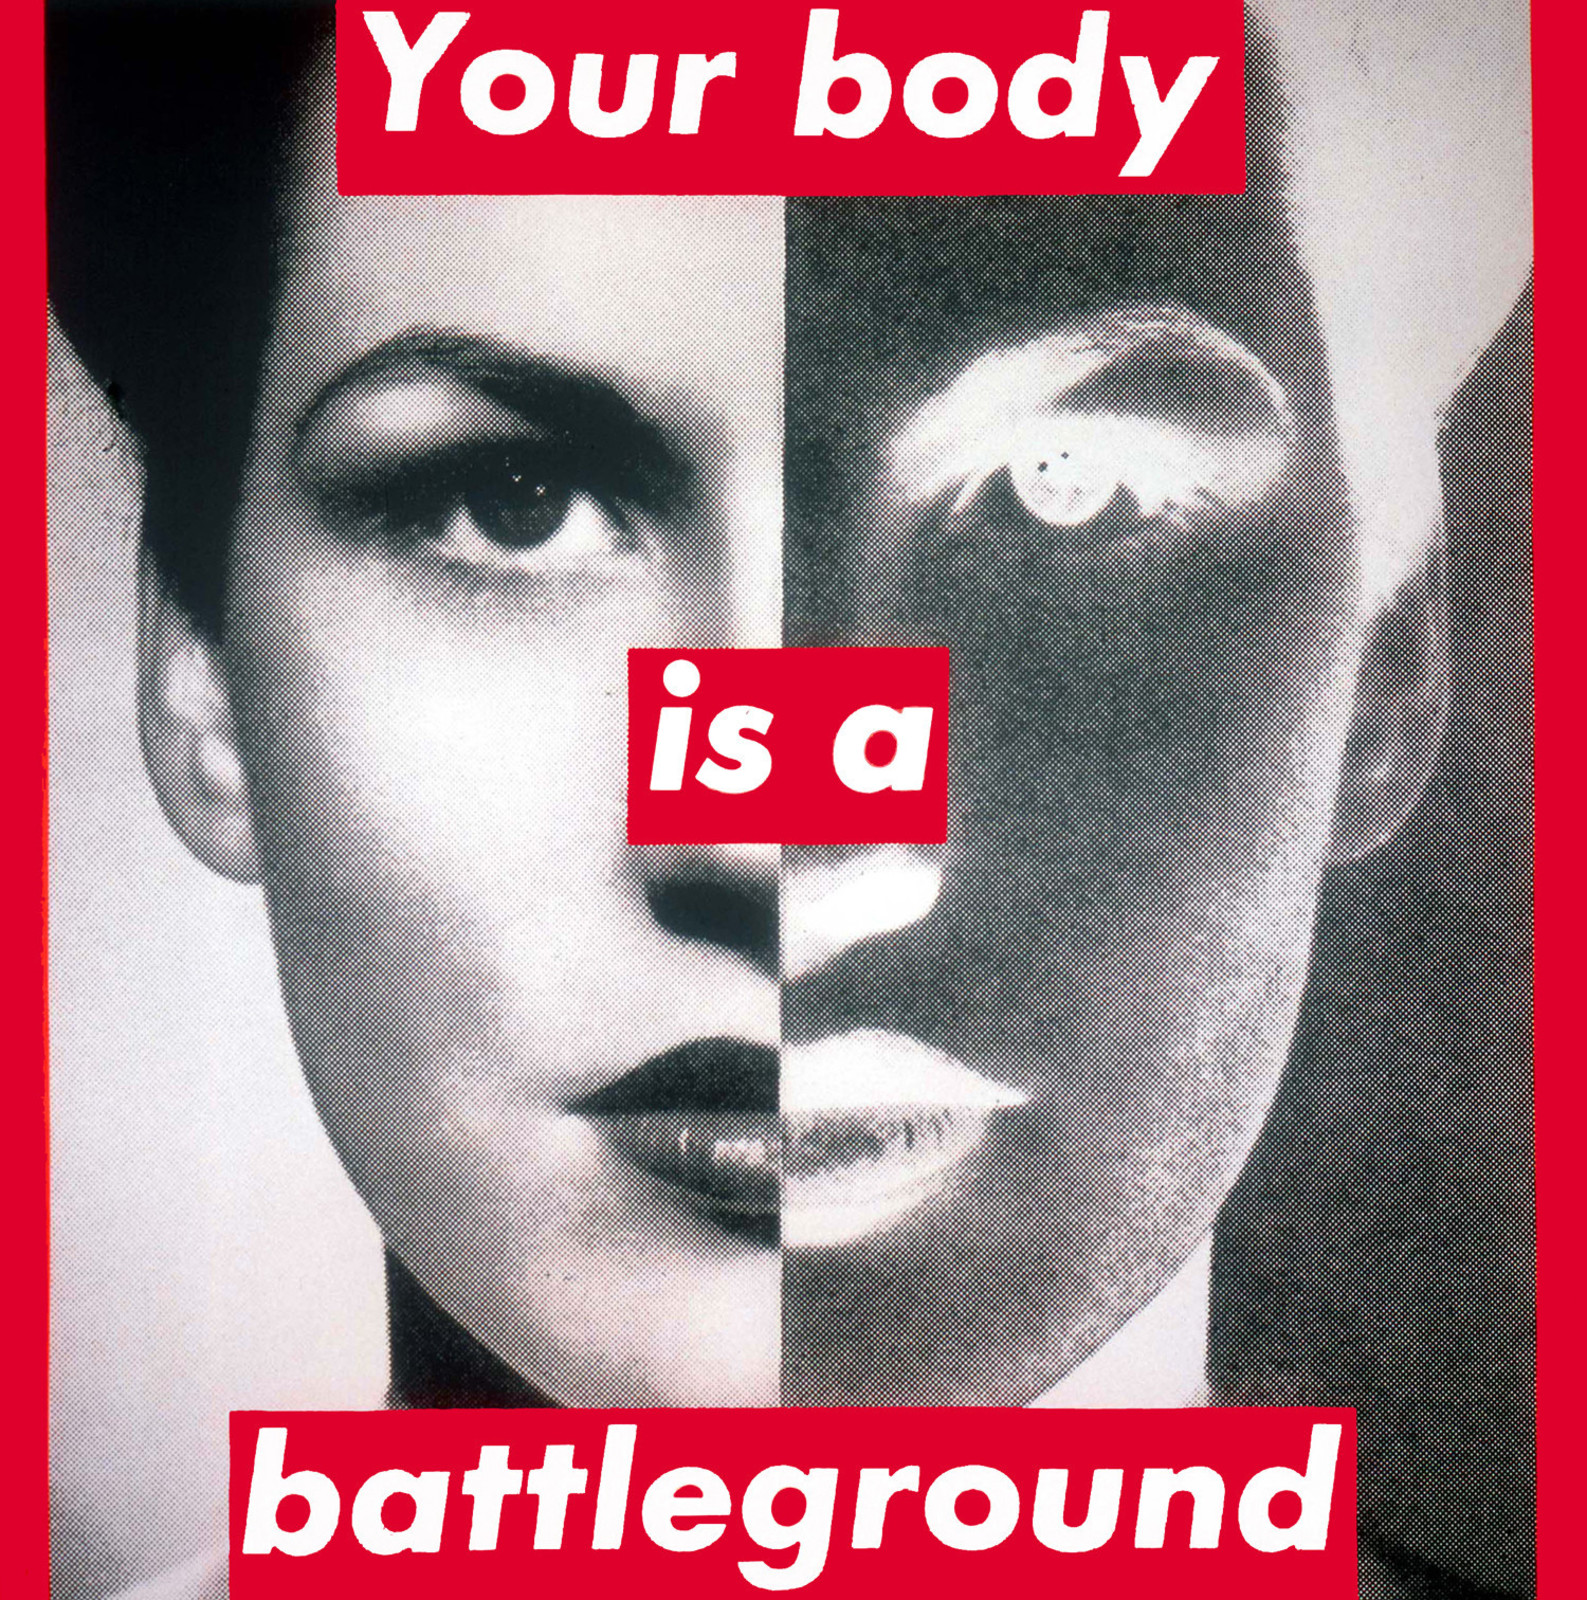 Барбара Крюгер  Без названия (Ваше тело является полем битвы). 1989  Шелкография. 284,48 x 284,48 см